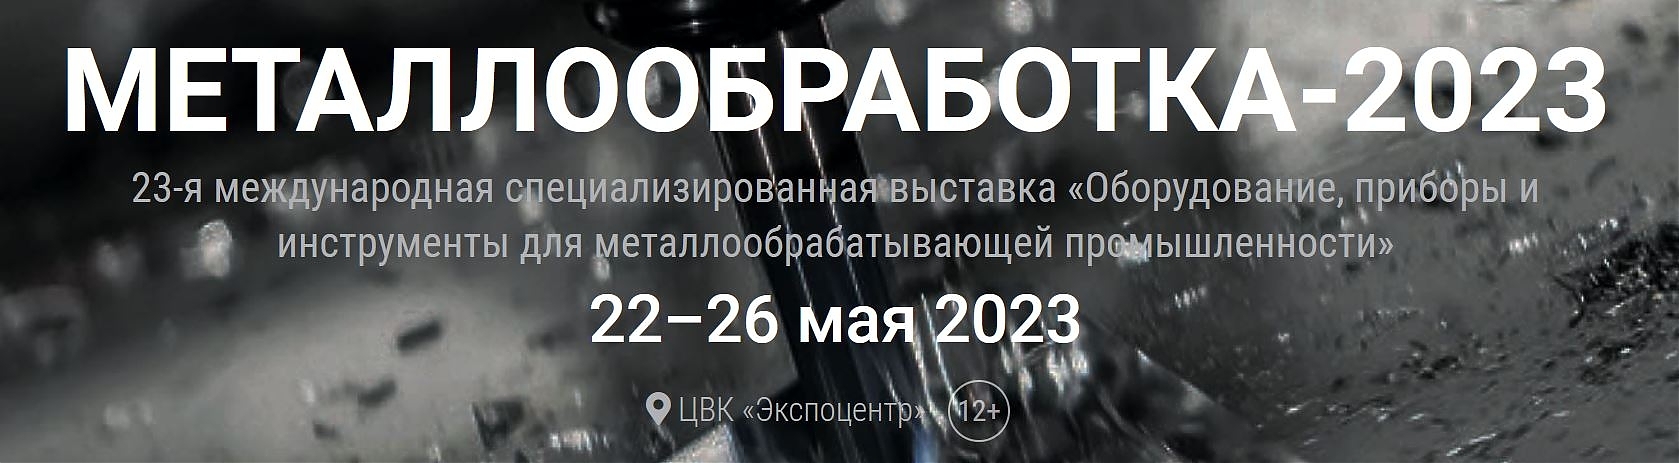 15.05.2023 приглашаем вас на встречу на выставке  “Металлообработка -2023” , Москва с 22.05 по 26.05.2023 на стенде наших партнеров – стенд № 1B10